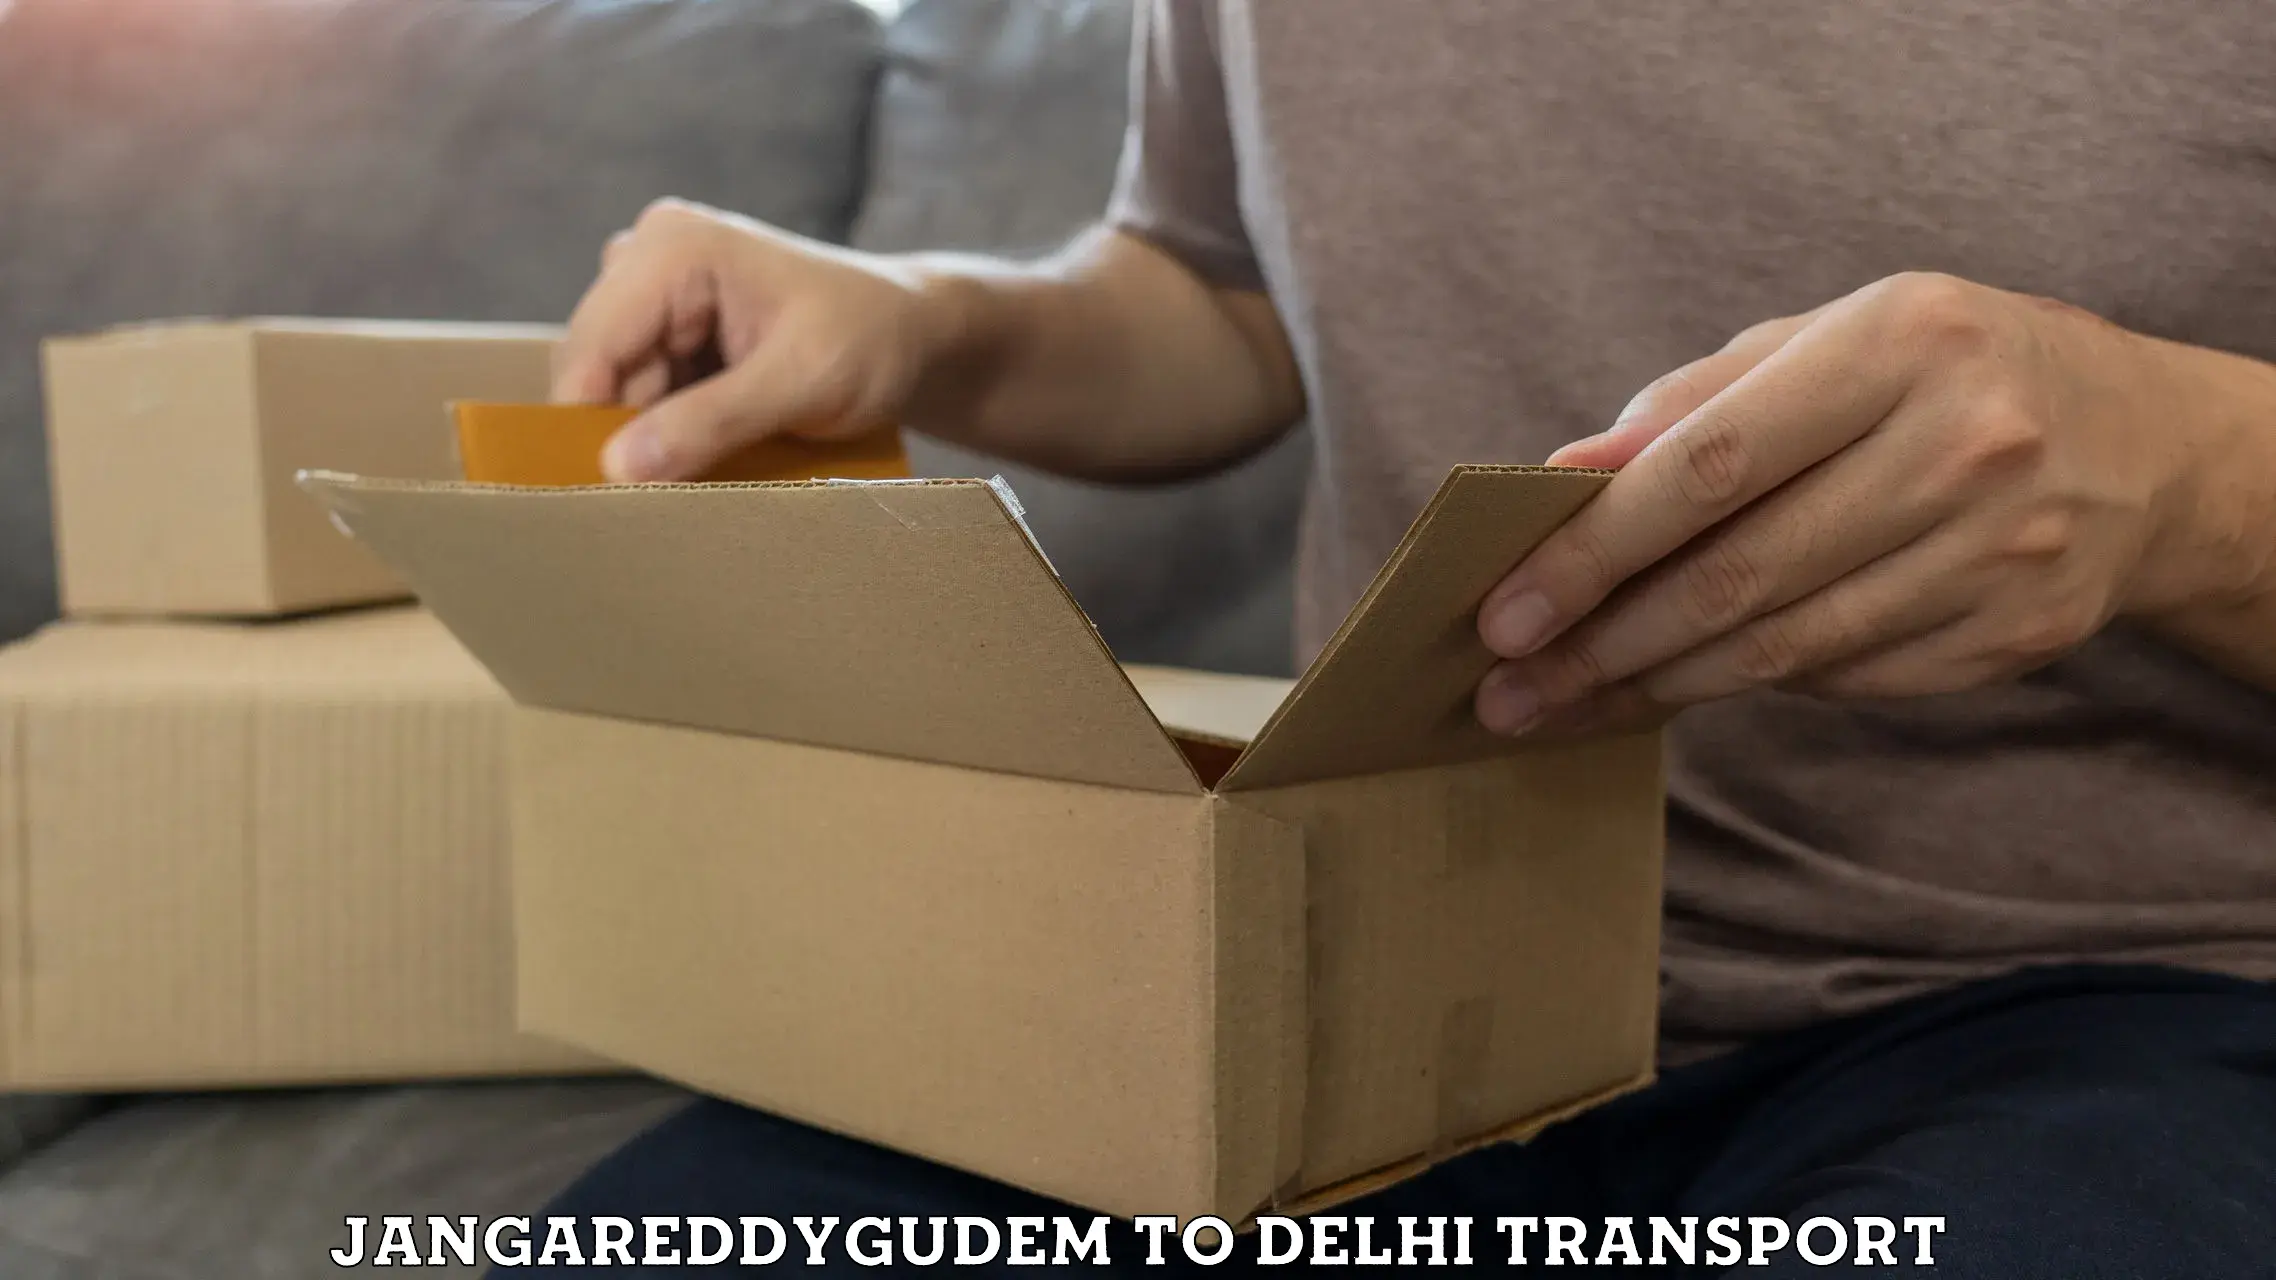 Online transport Jangareddygudem to IIT Delhi